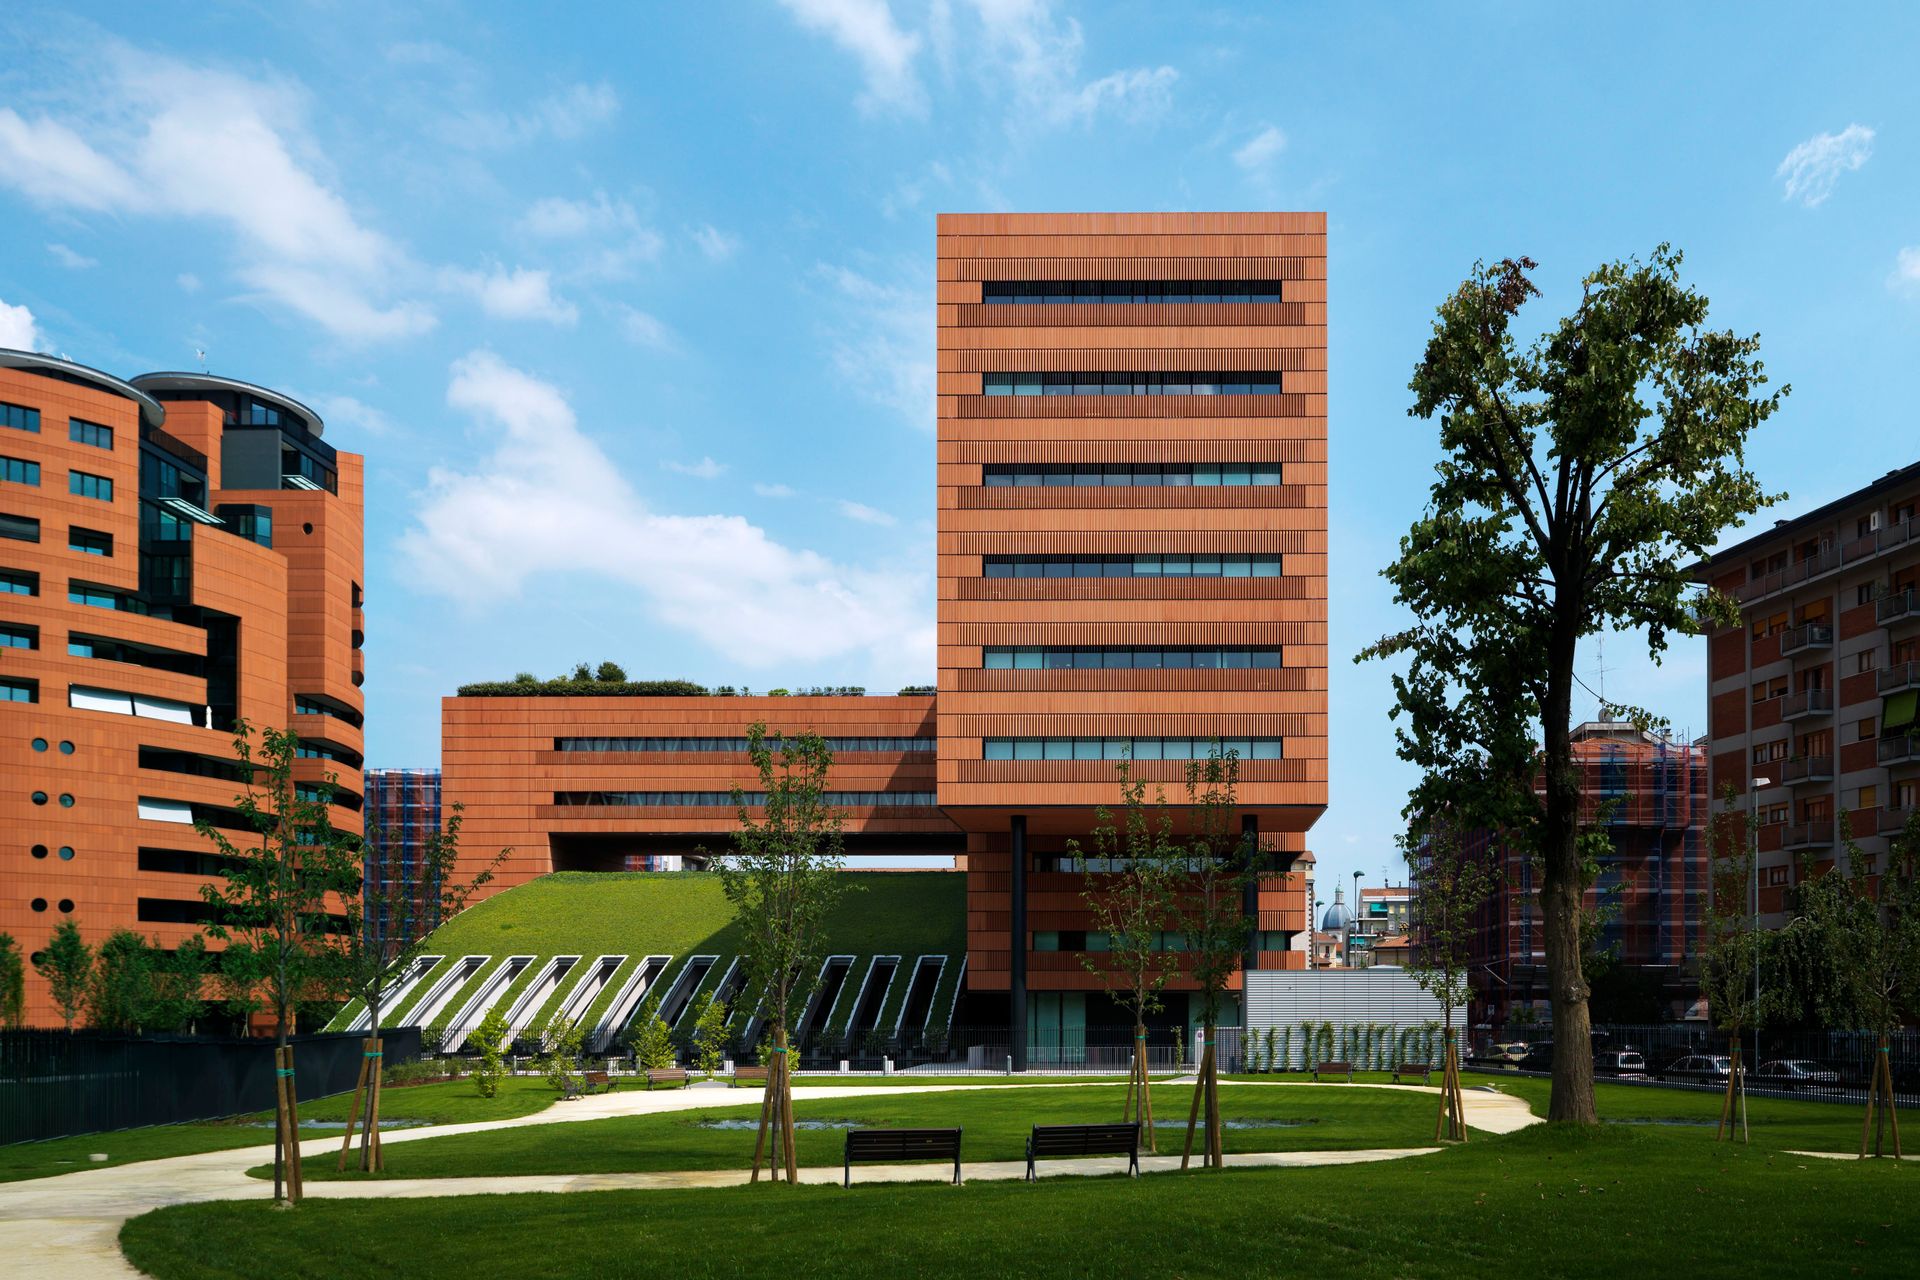 Il quartier generale del Campari Group a Sesto San Giovanni nell'area metropolitana di Milano